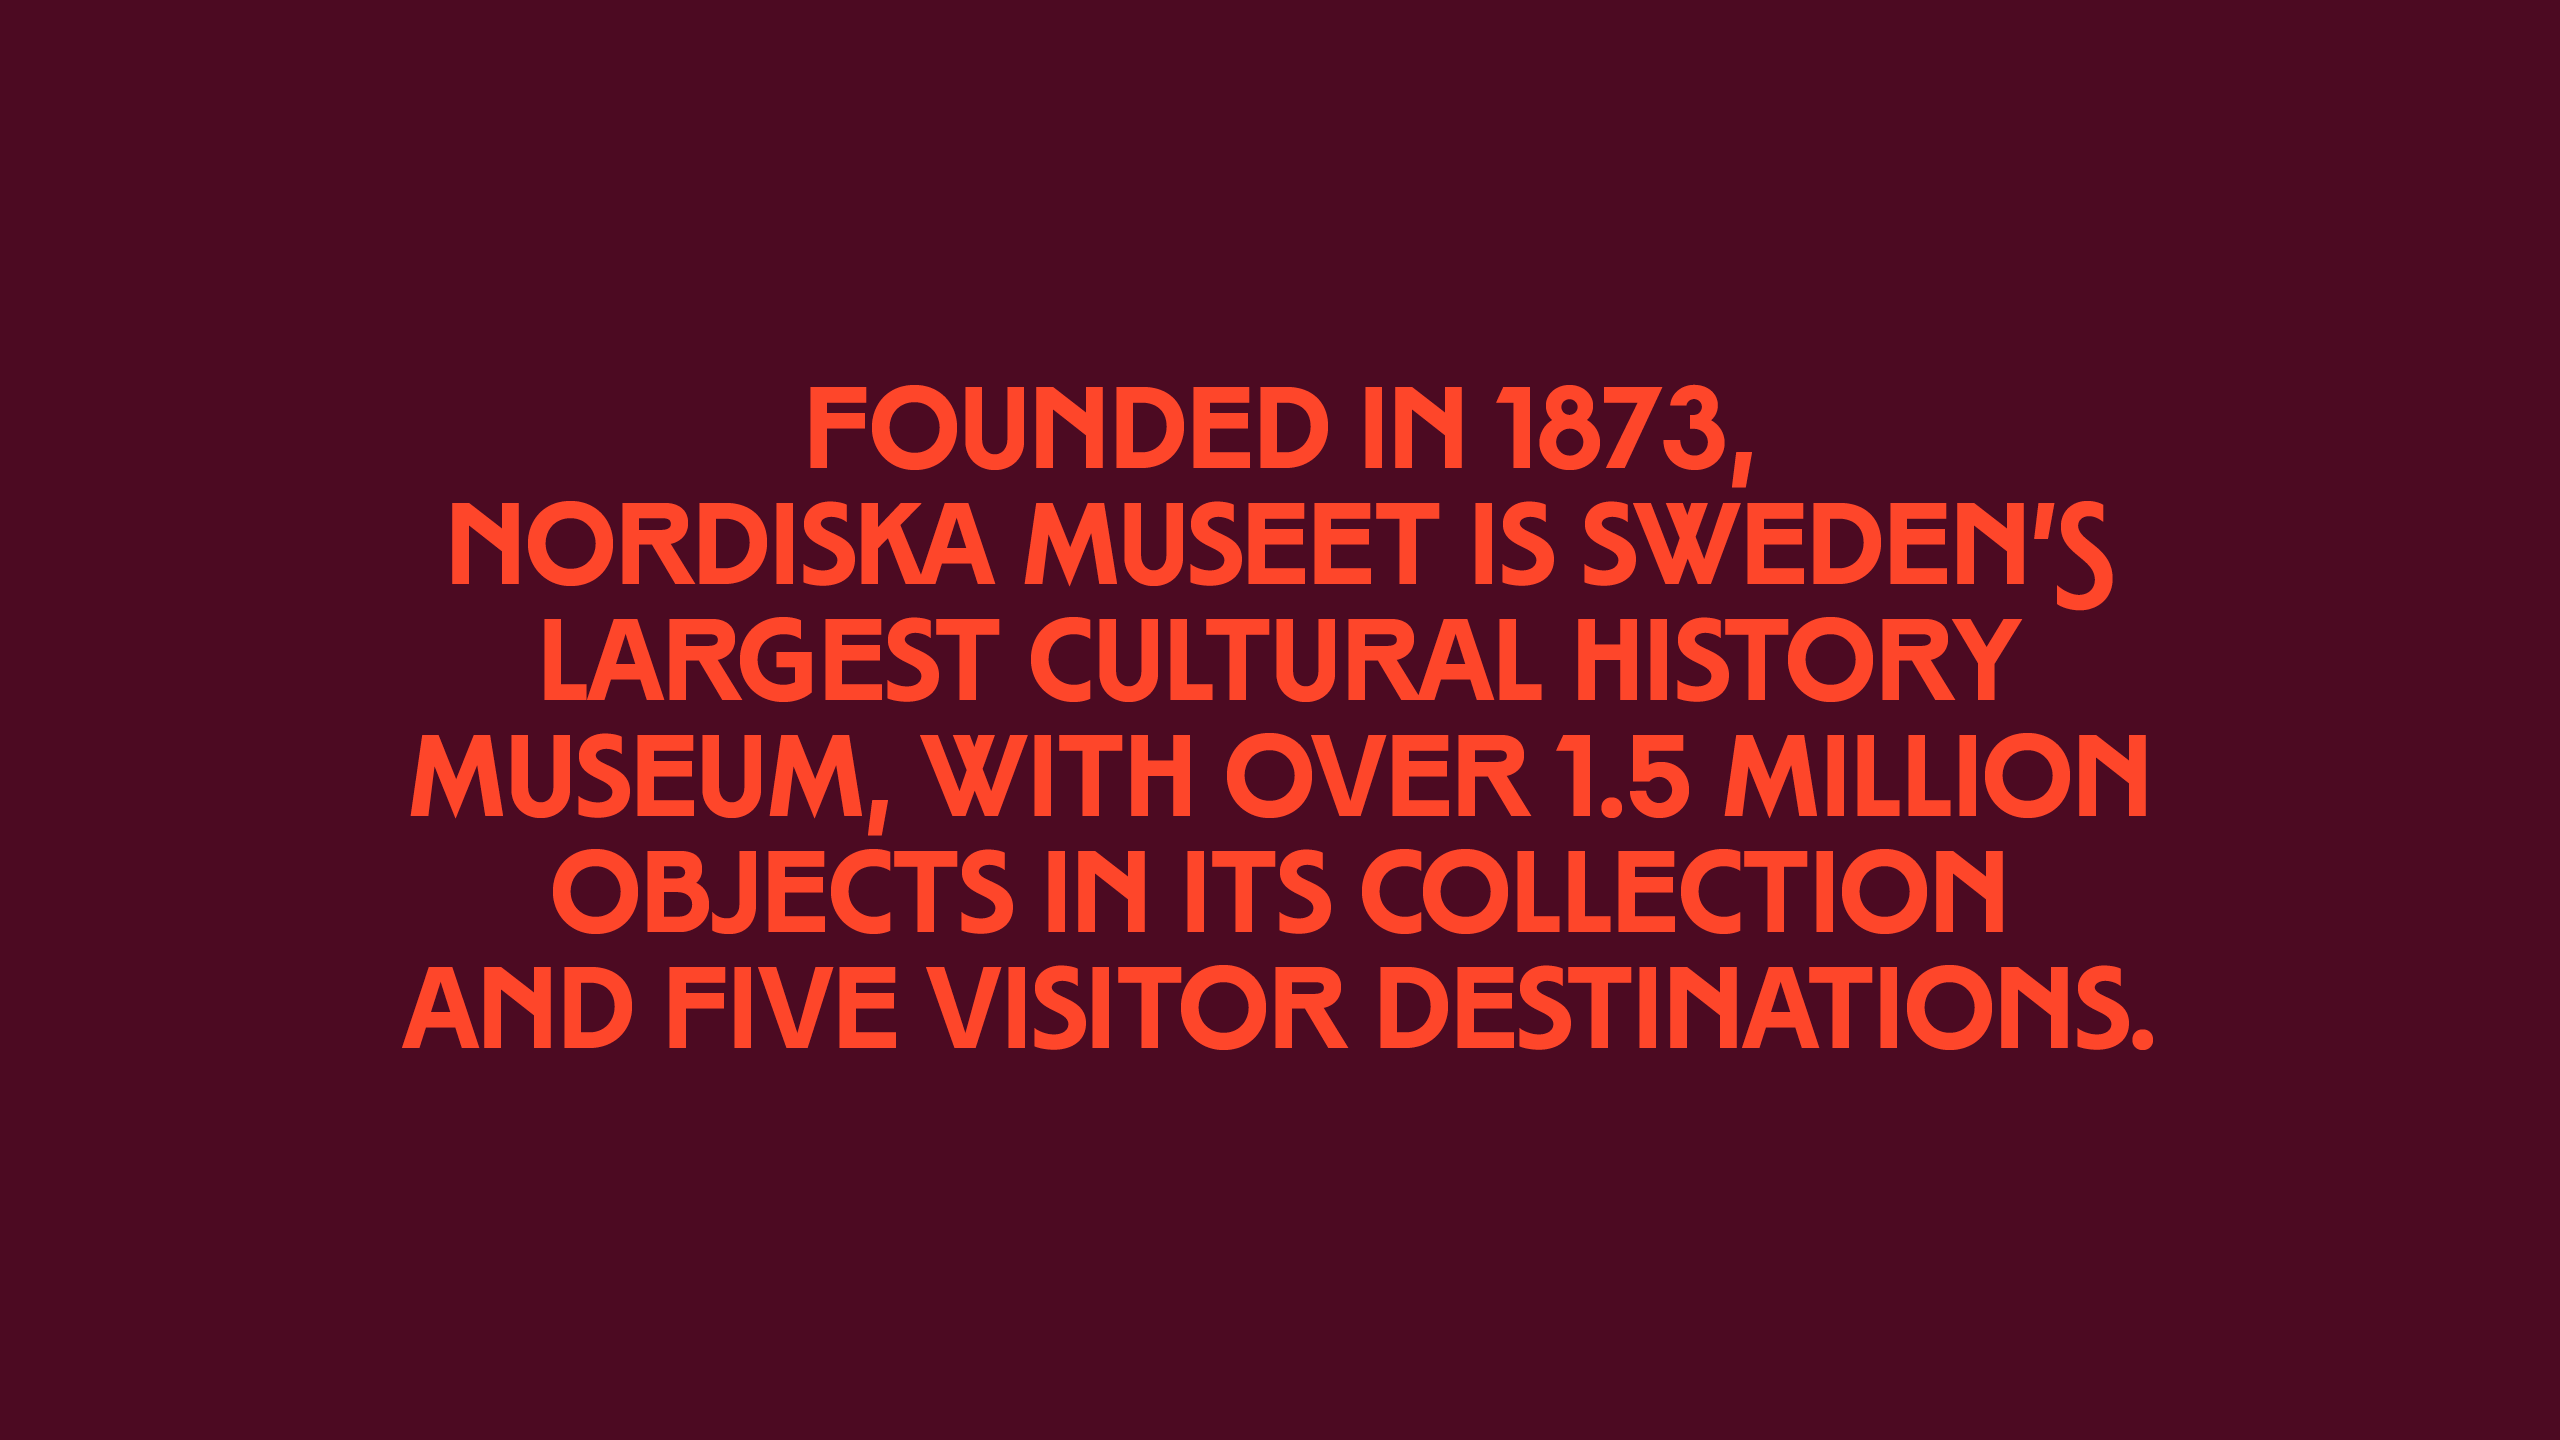 NordiskaMuseet_type_info_2